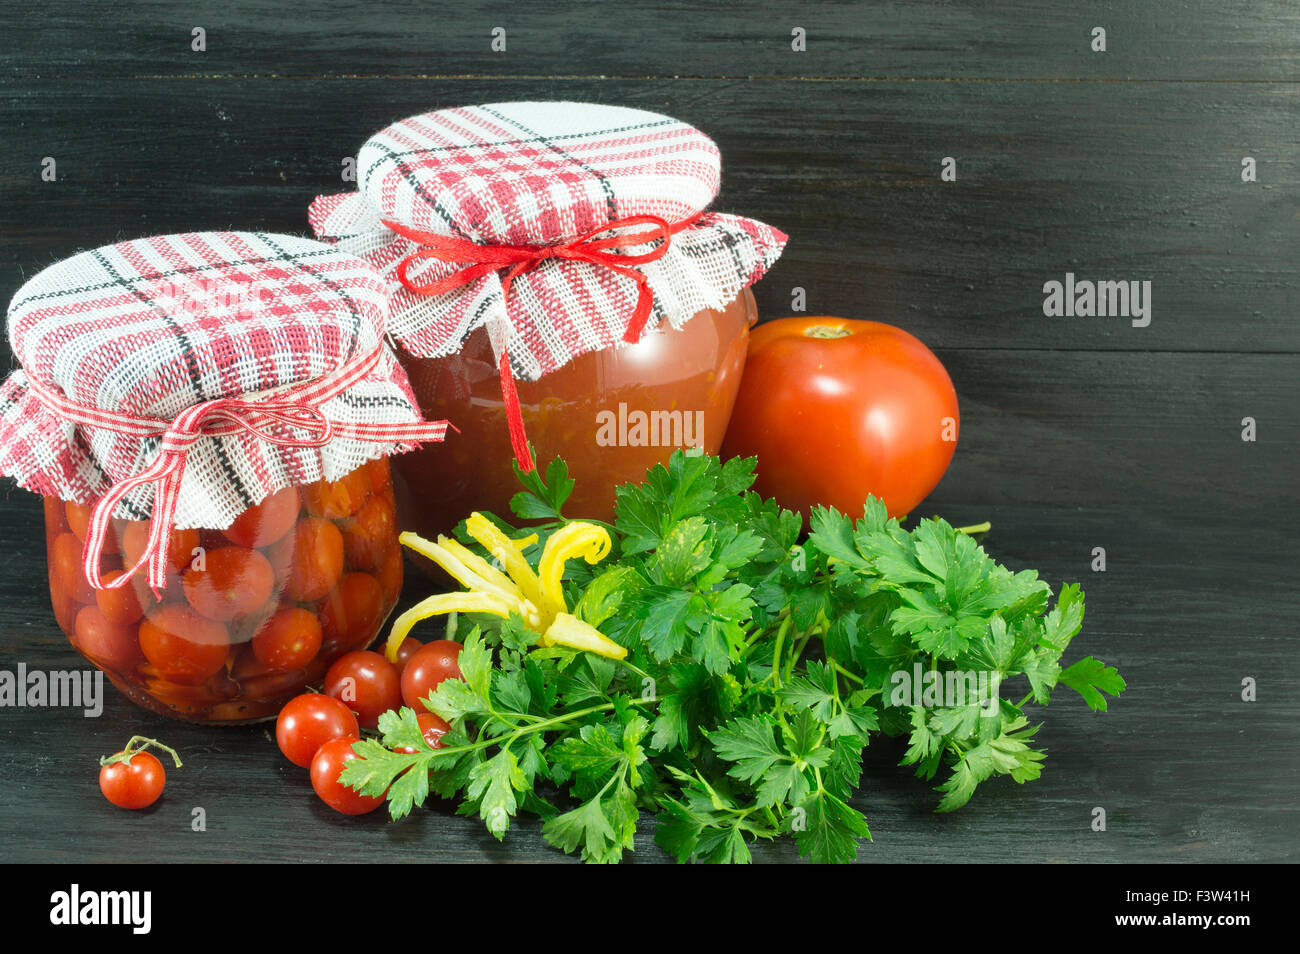 Vasetti di ketchup fatti in casa e pomodoro ciliegino accanto a freschi pomodori ciliegia su sfondo scuro Foto Stock